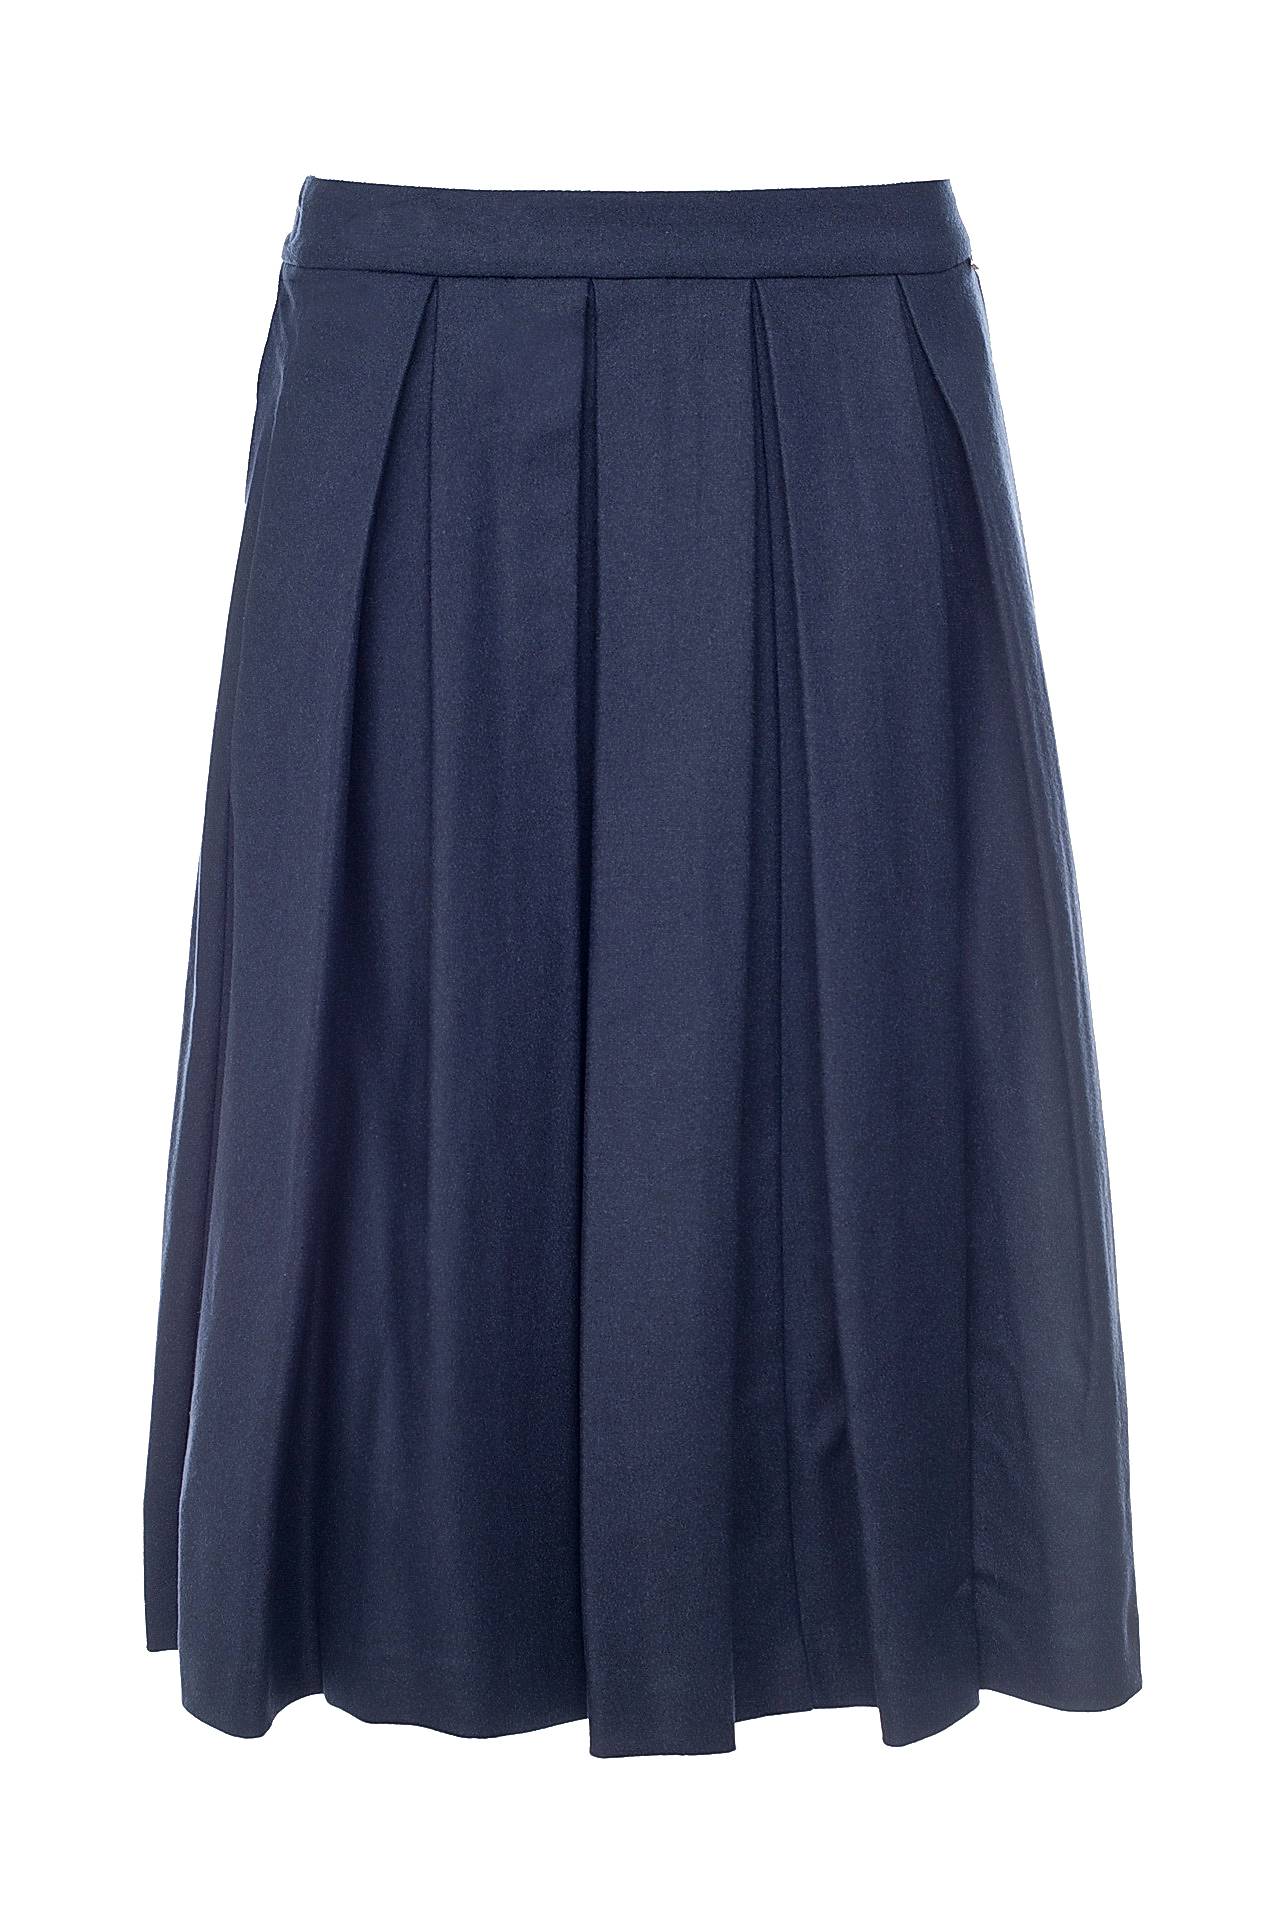 Одежда женская Юбка TWIN-SET (A6TTA625C/17.1). Купить за 9300 руб.